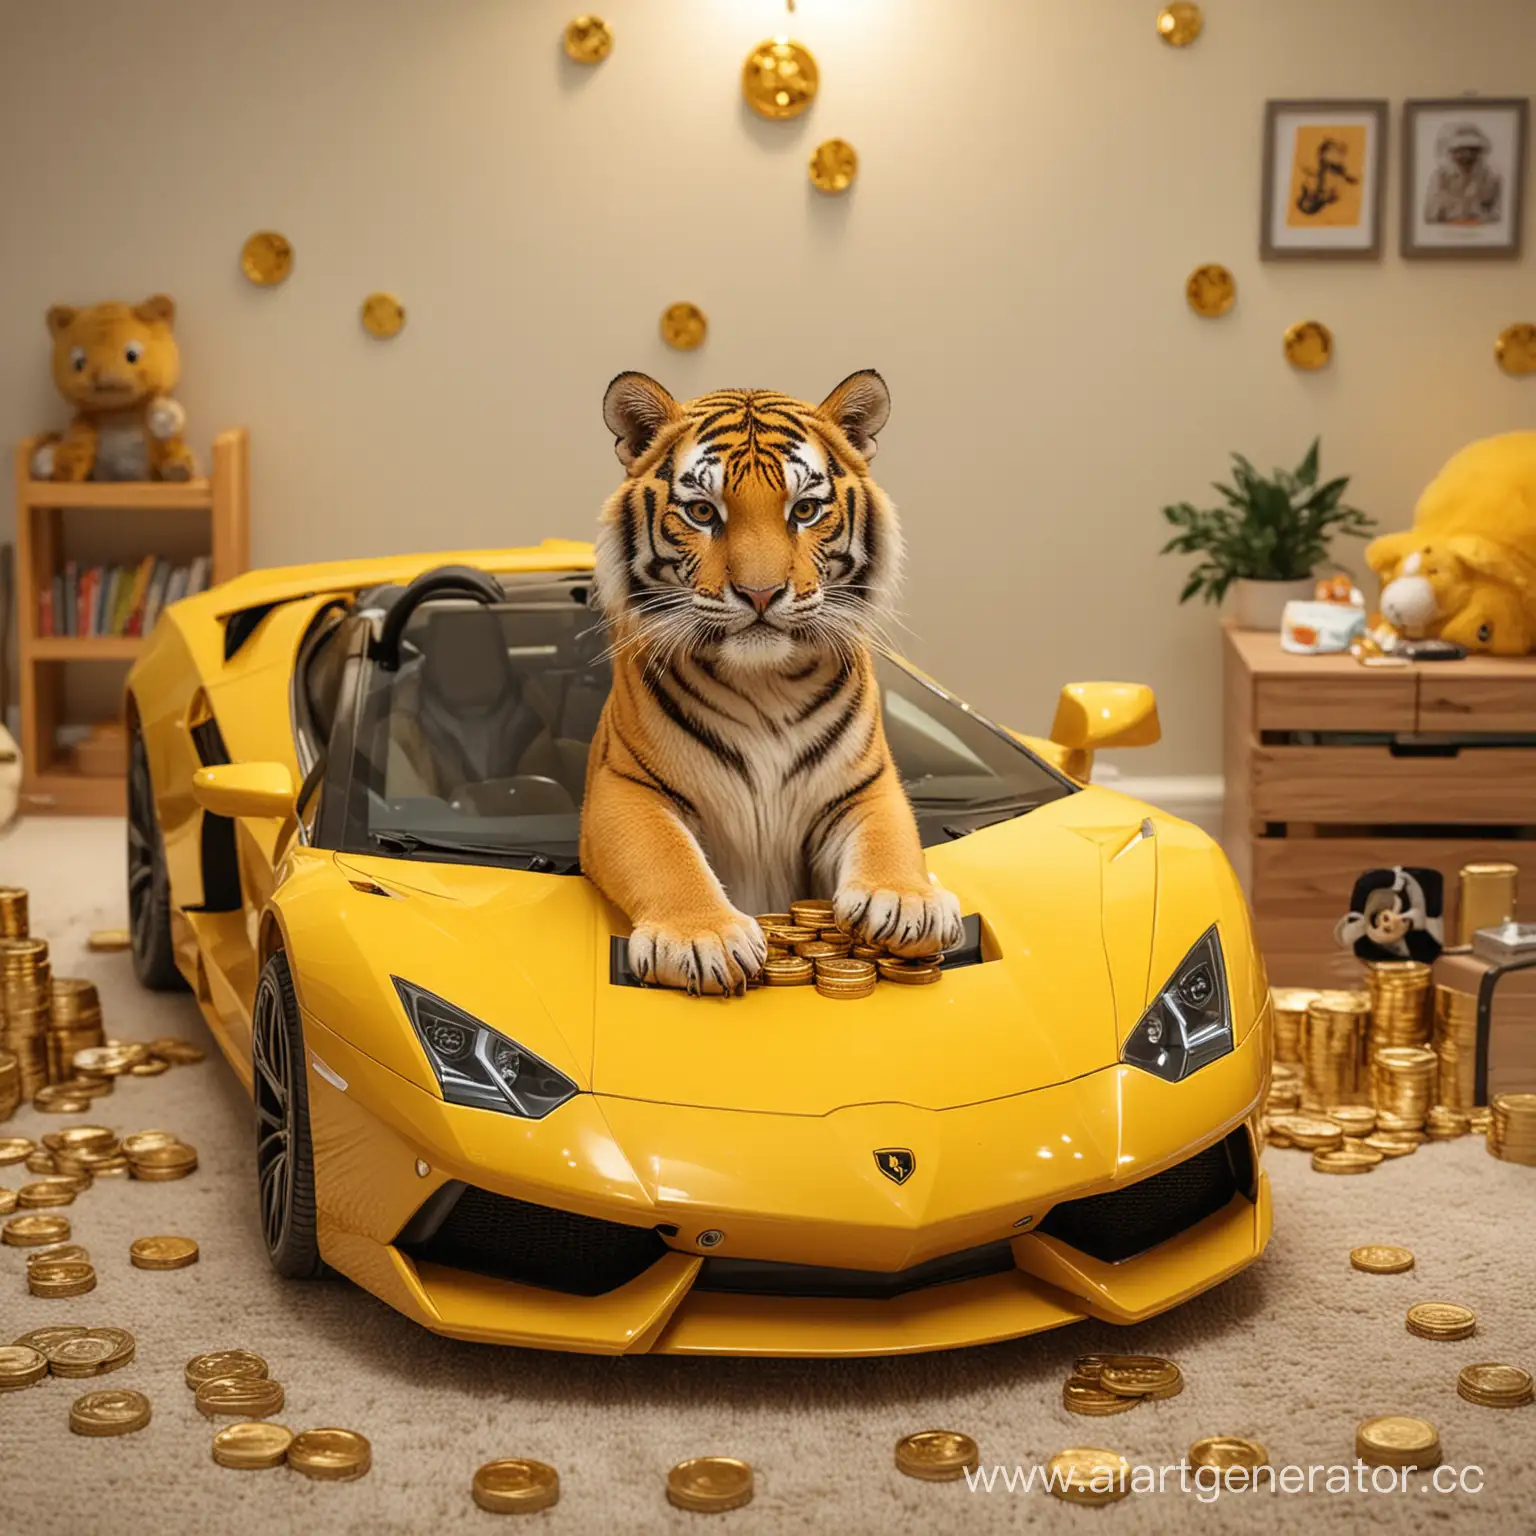 Тигр сидит в детской желтой ламборгини а сзади него куча биткоинов
